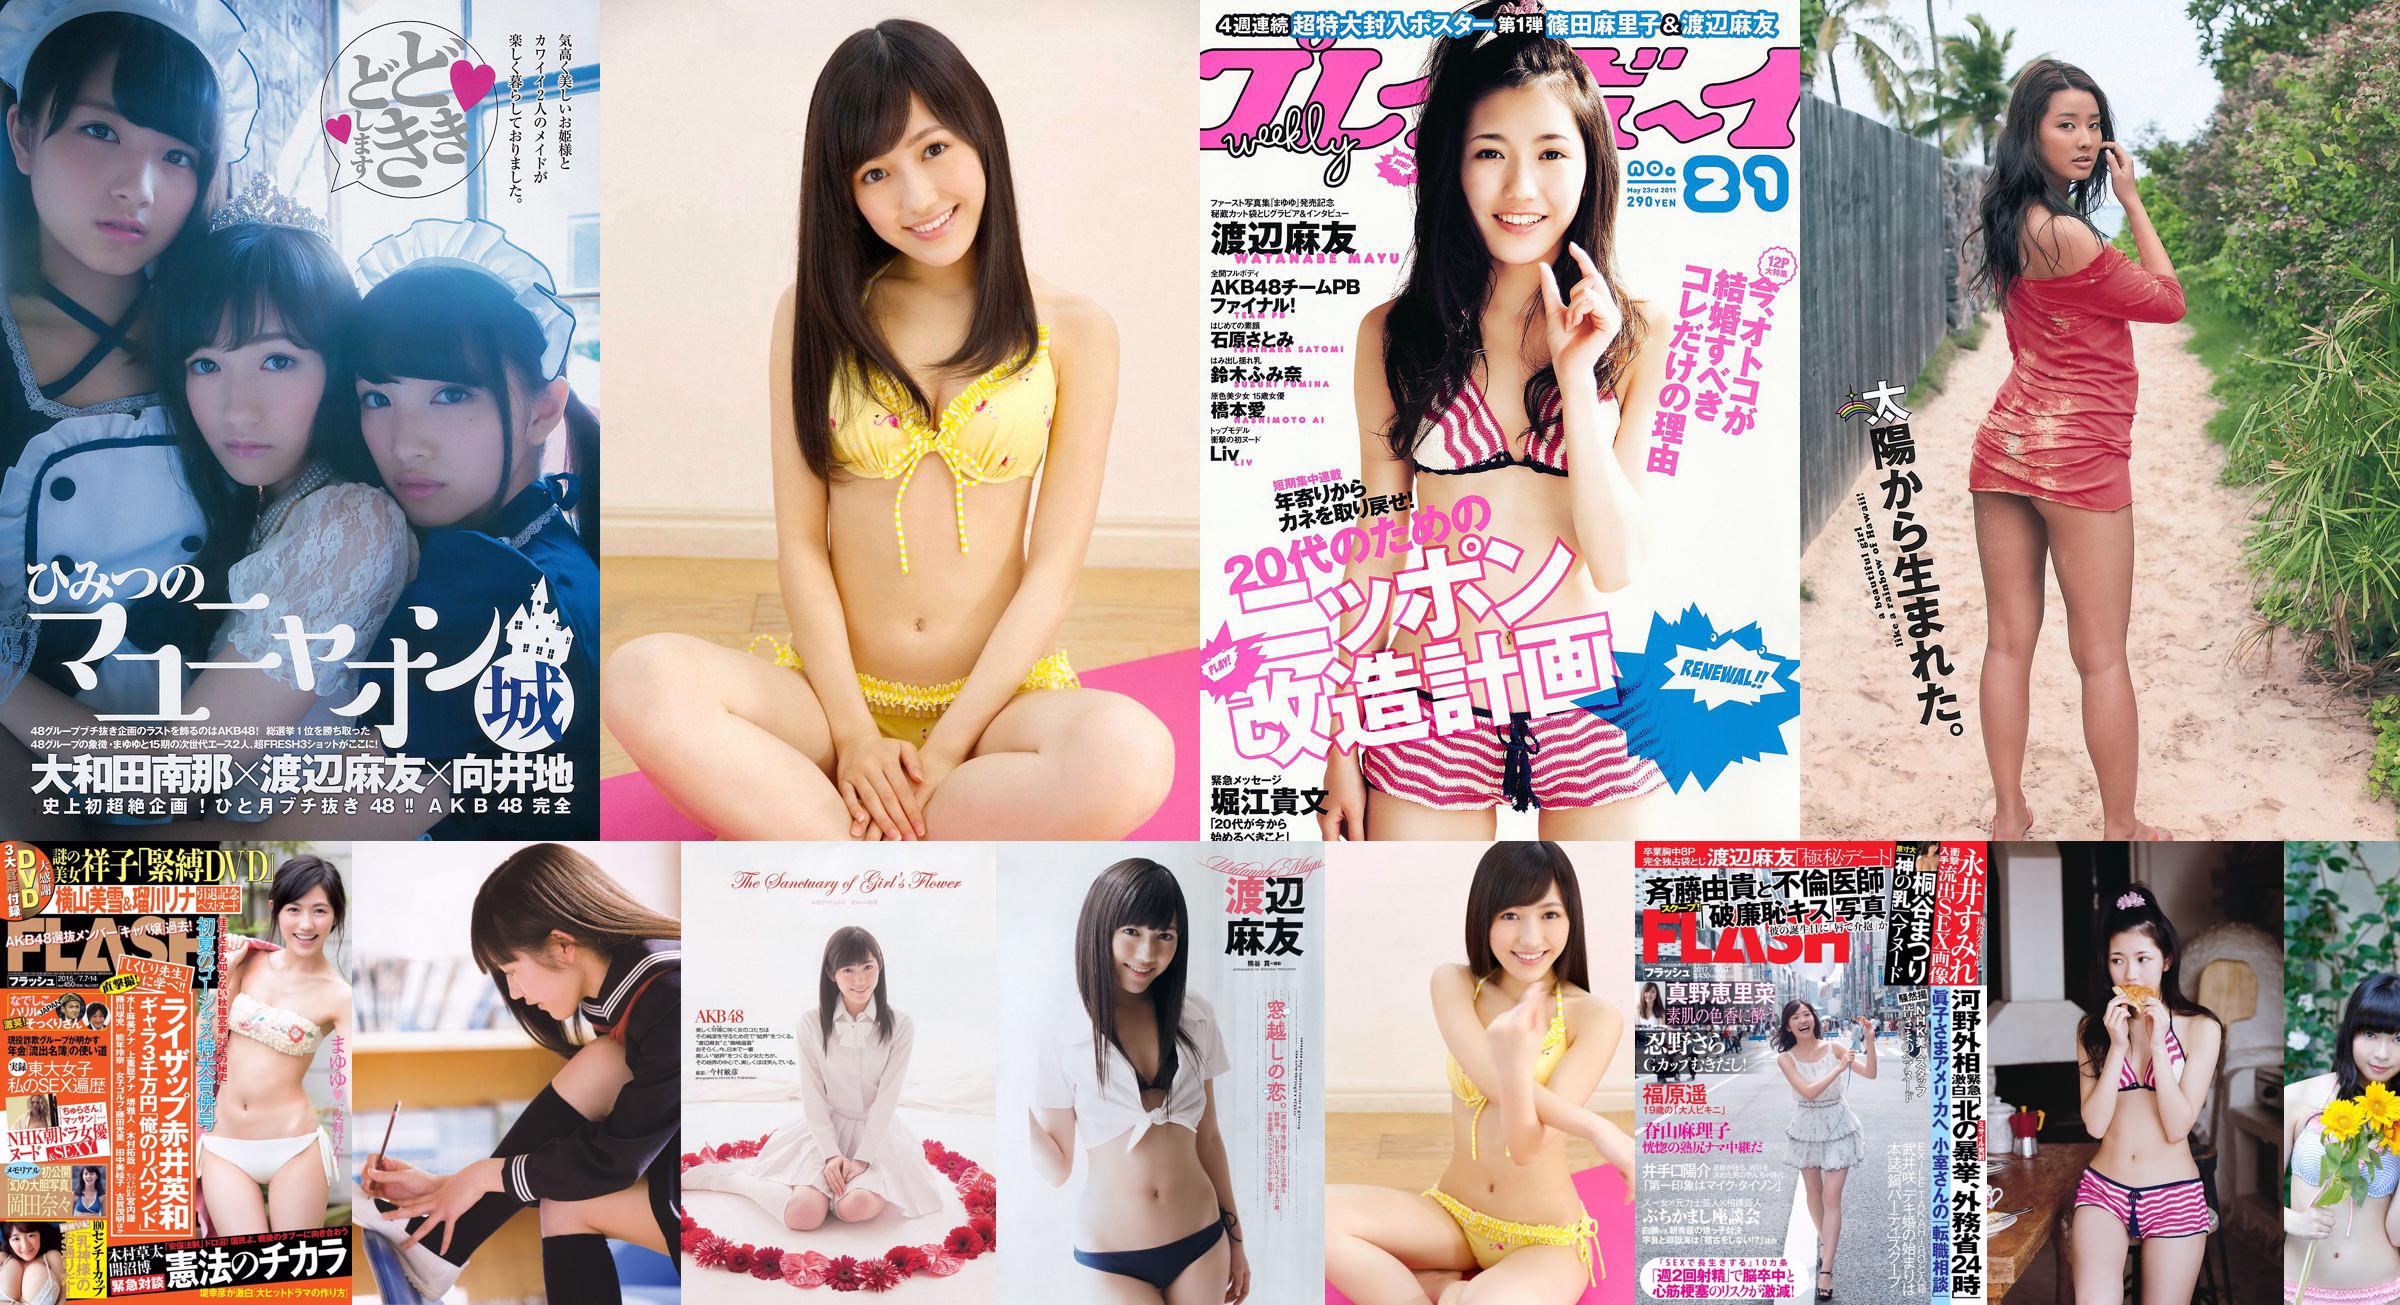 Mayu Watanabe Yuki Morisaki Yuki Wada Ayaka Wada Hanane Fukuda Fumiko Mizuta Yuzuki Aikawa Chika Sakai [Weekly Playboy] 2013 No.17 Photograph No.818633 หน้า 1